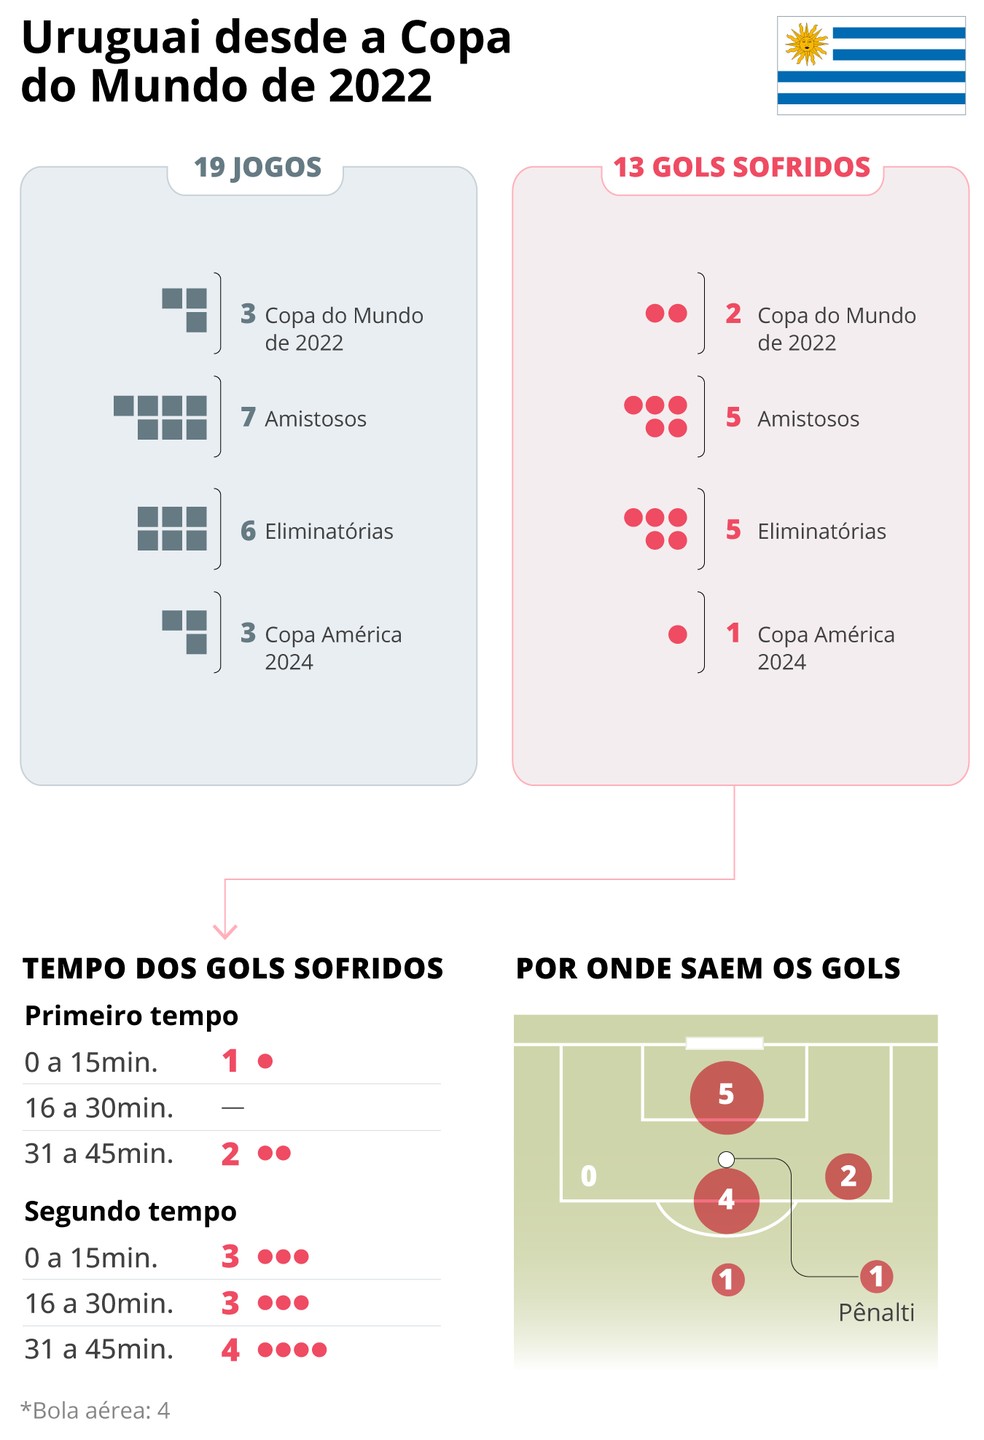 Infográfico: por onde saem os gols sofridos pela seleção uruguaia — Foto: Editoria de Arte